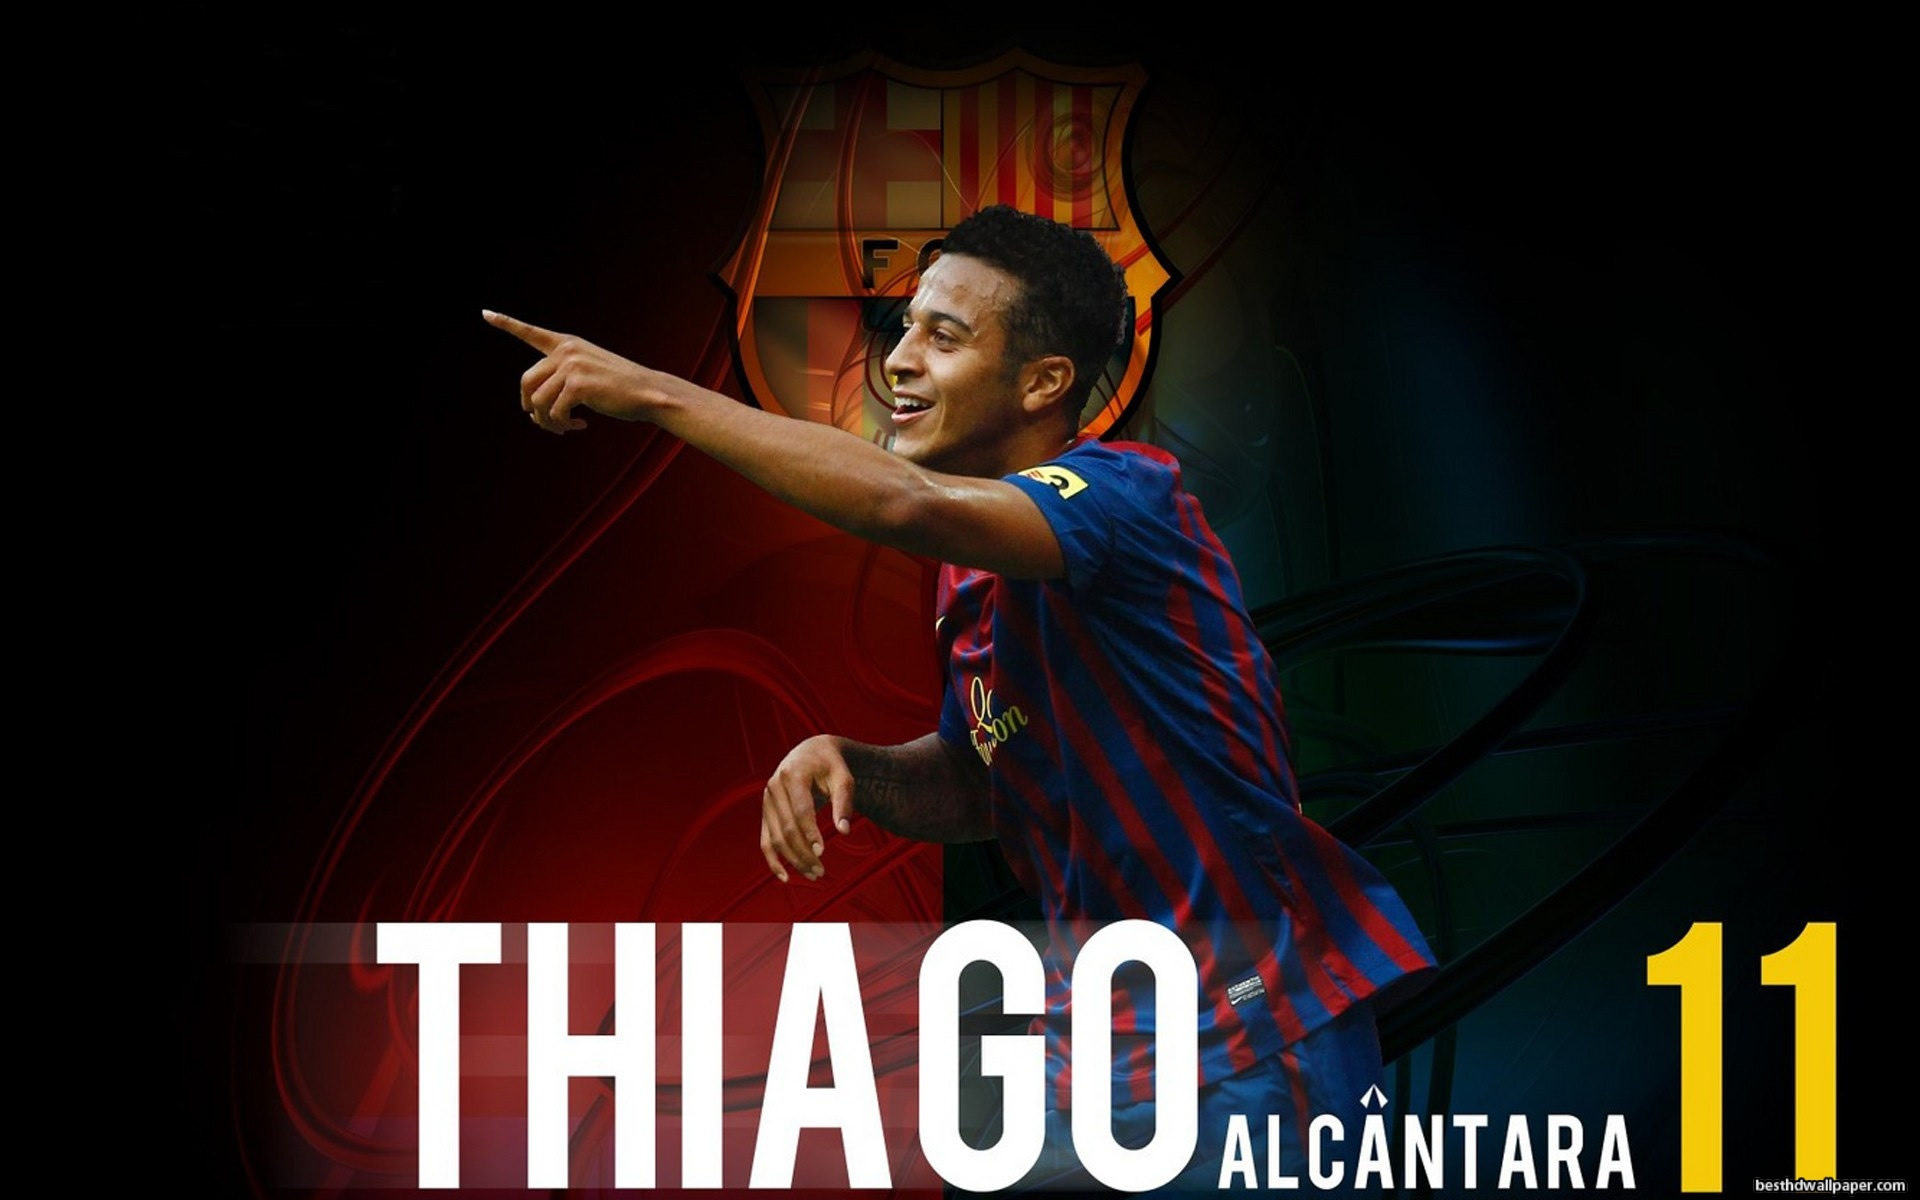 Thiago Alcantara - Thiago Alcantara Wallpaper Hd , HD Wallpaper & Backgrounds